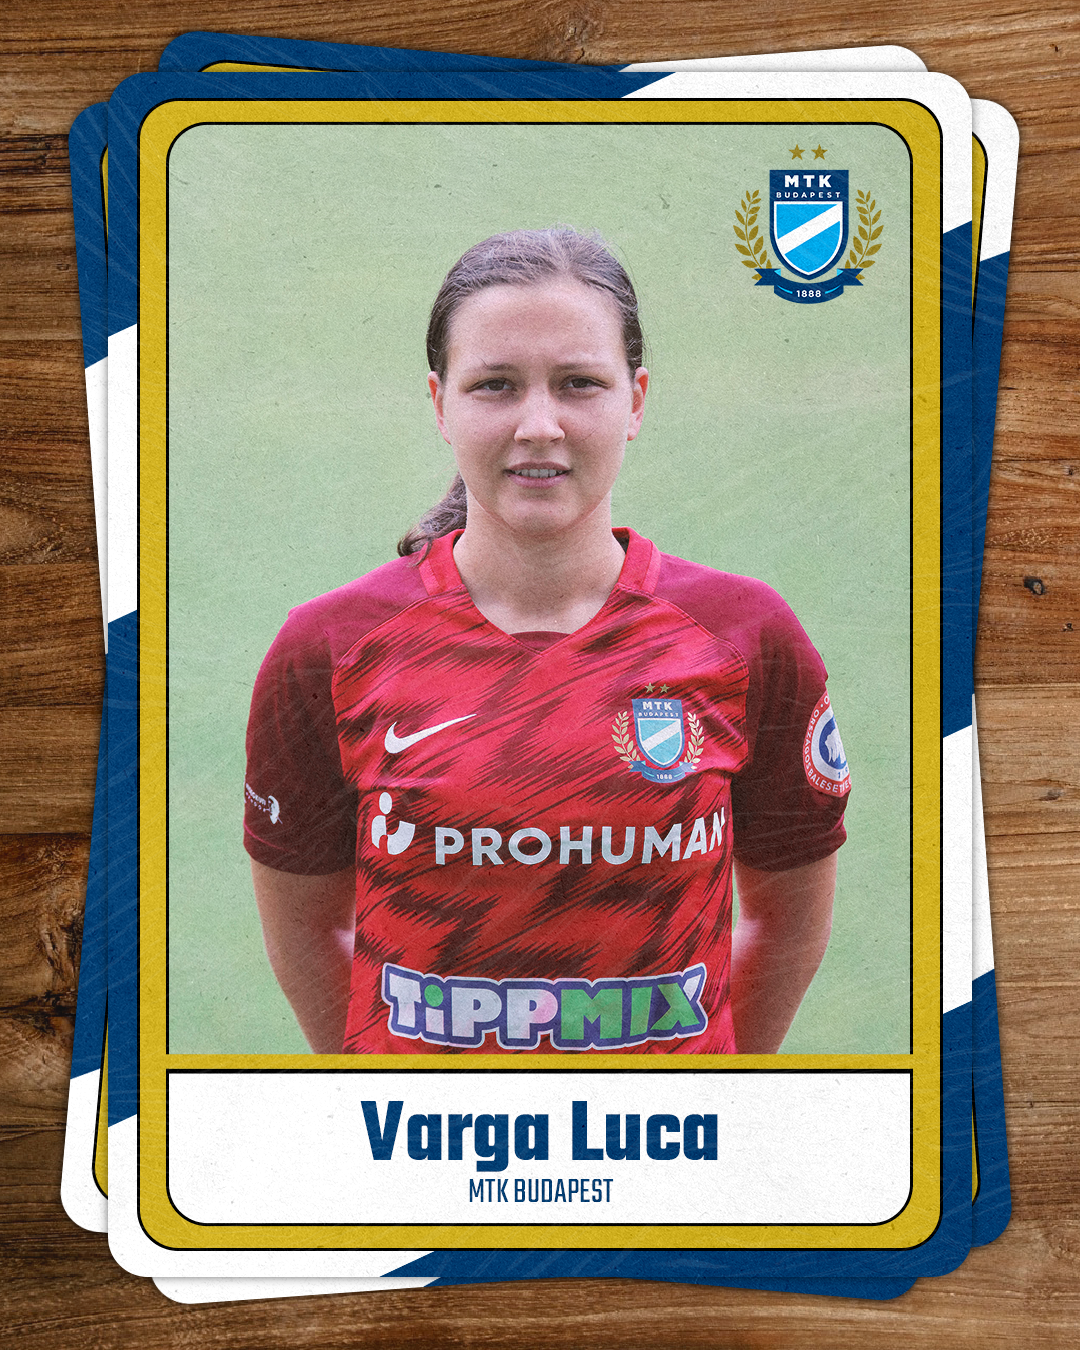 Varga Luca